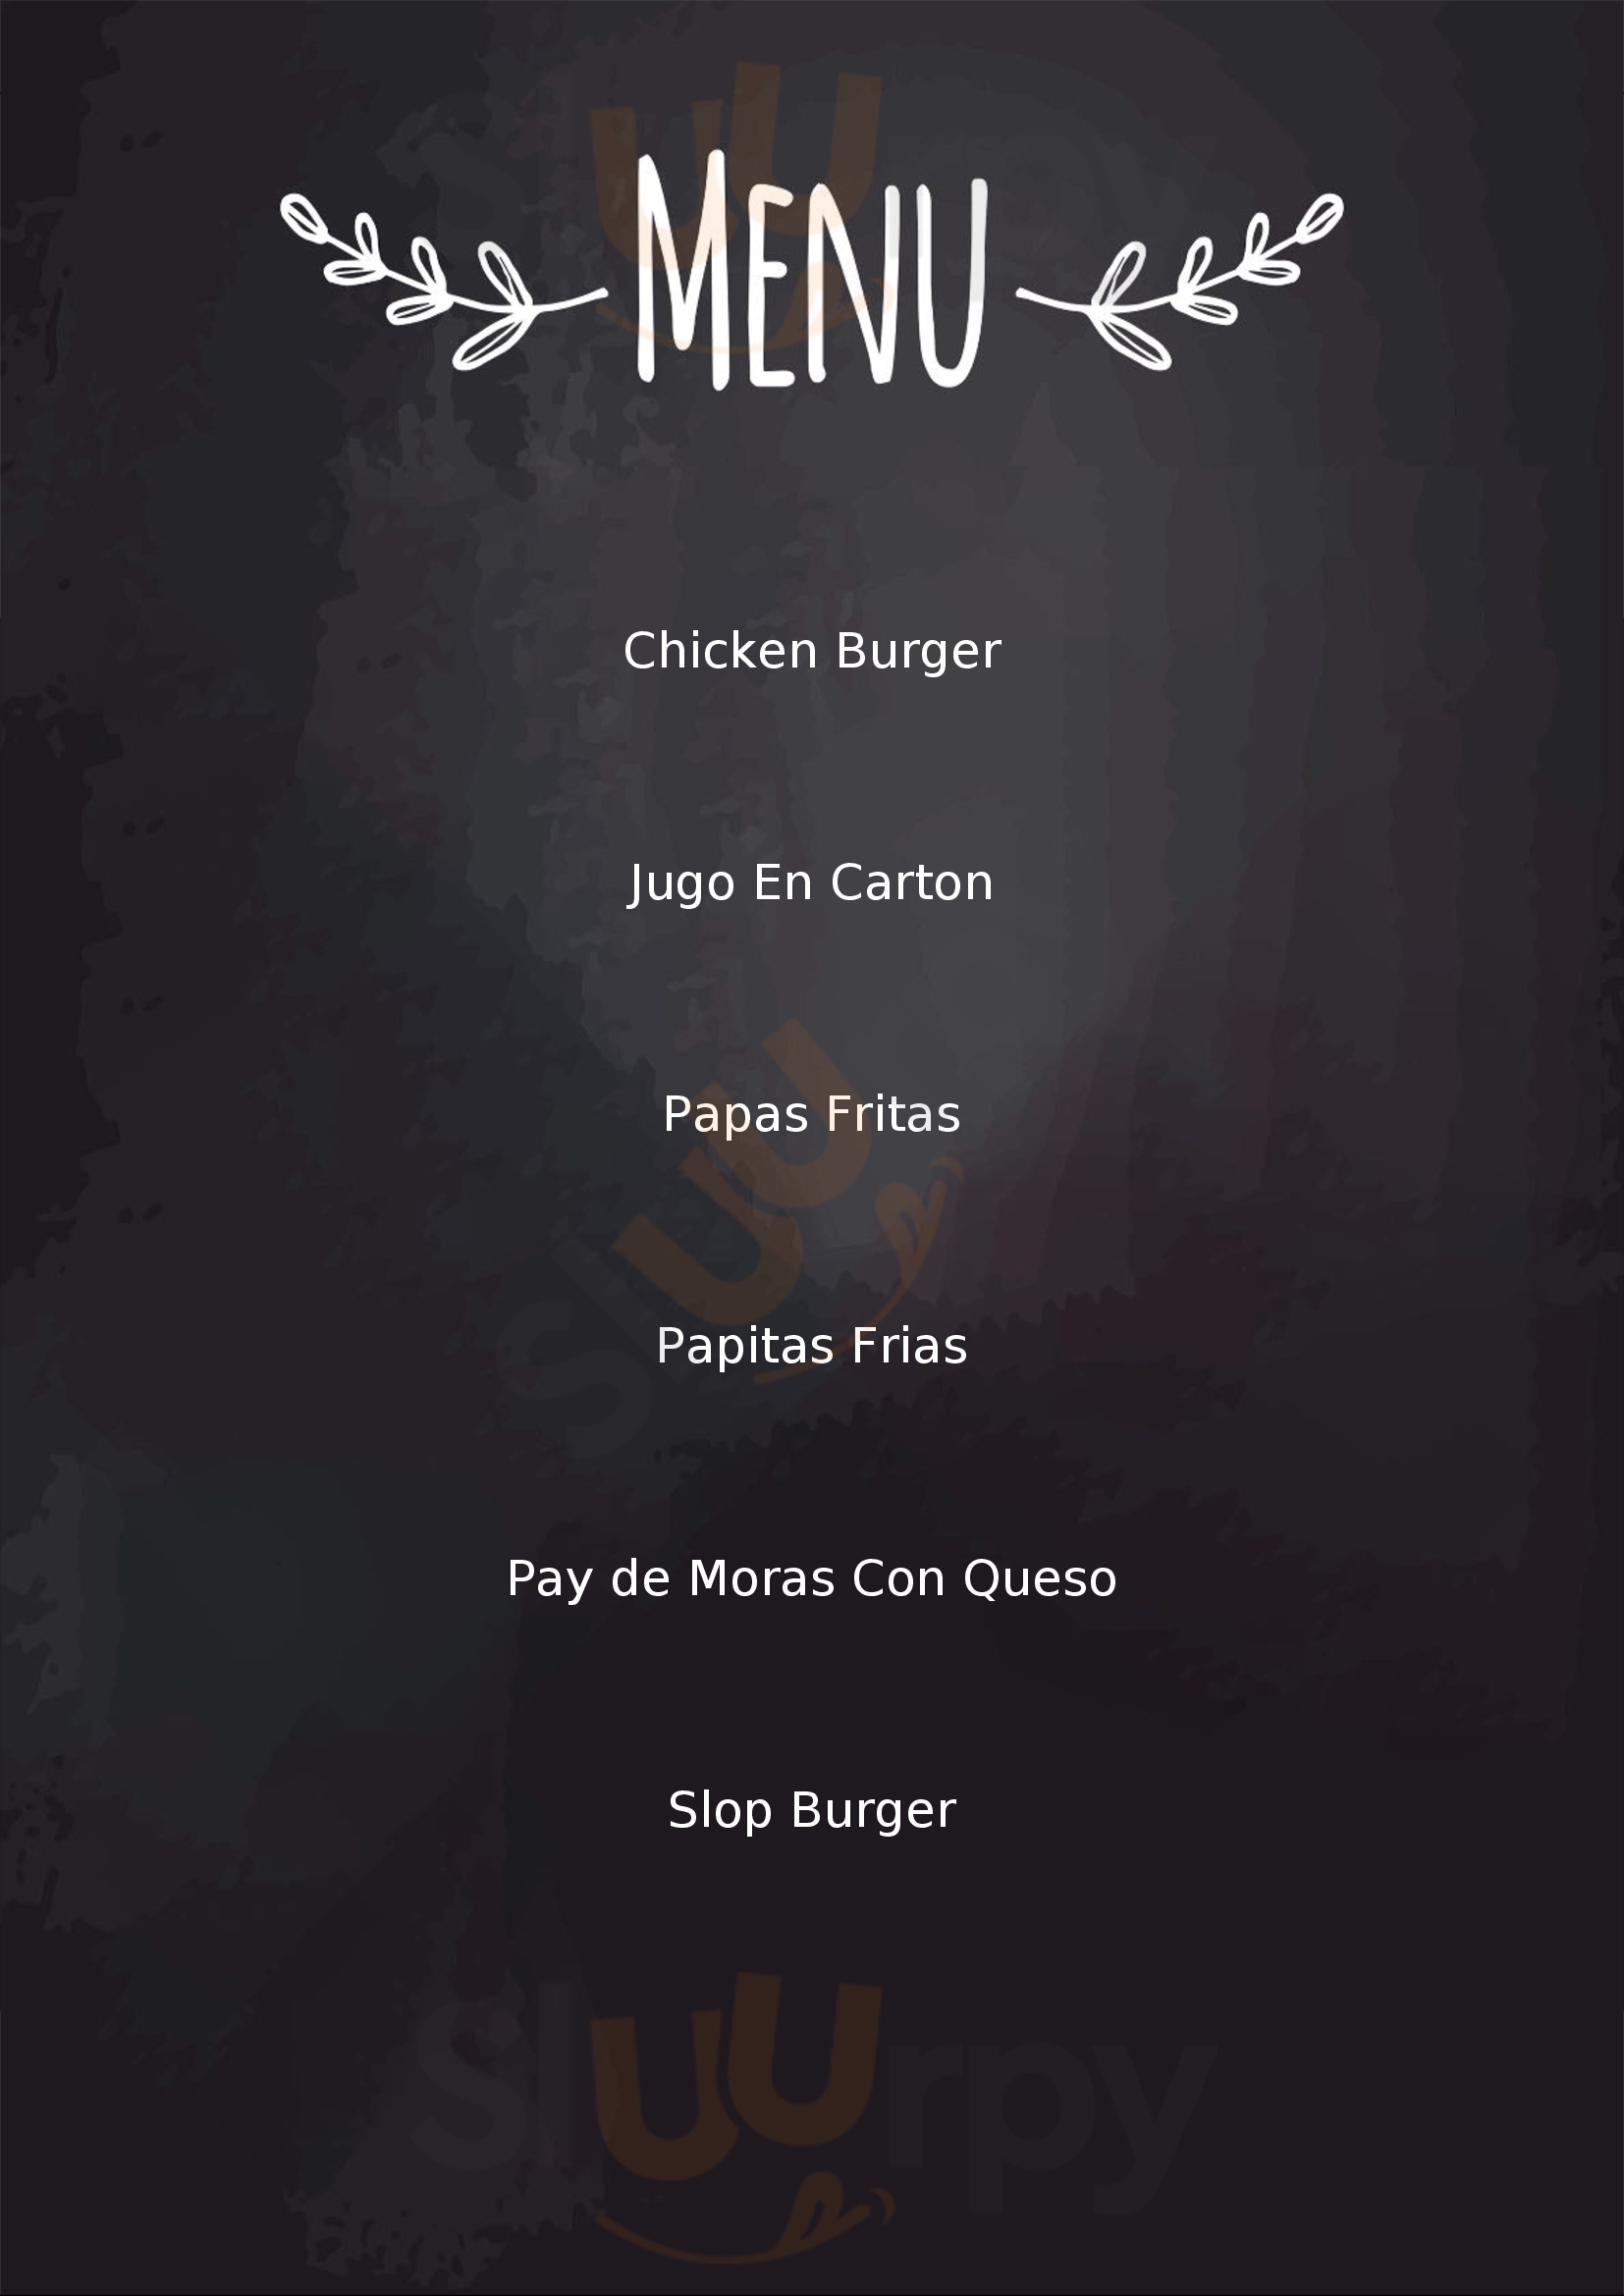 Burger King Tijuana Menu - 1